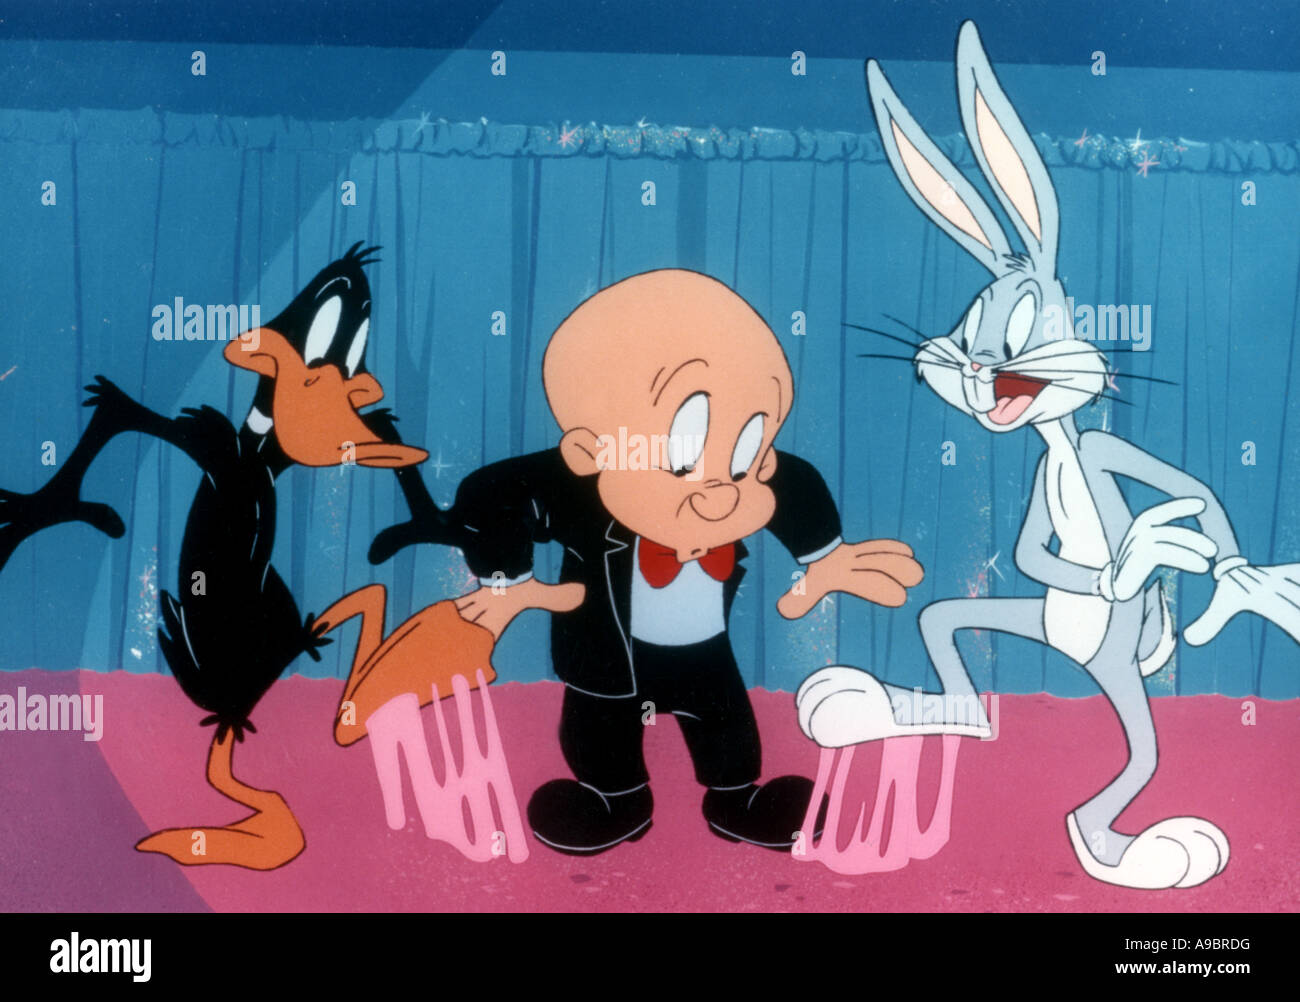 ELMER FUDD - Warner personaggio dei fumetti qui con Bugs Bunny e Daffy Duck Foto Stock